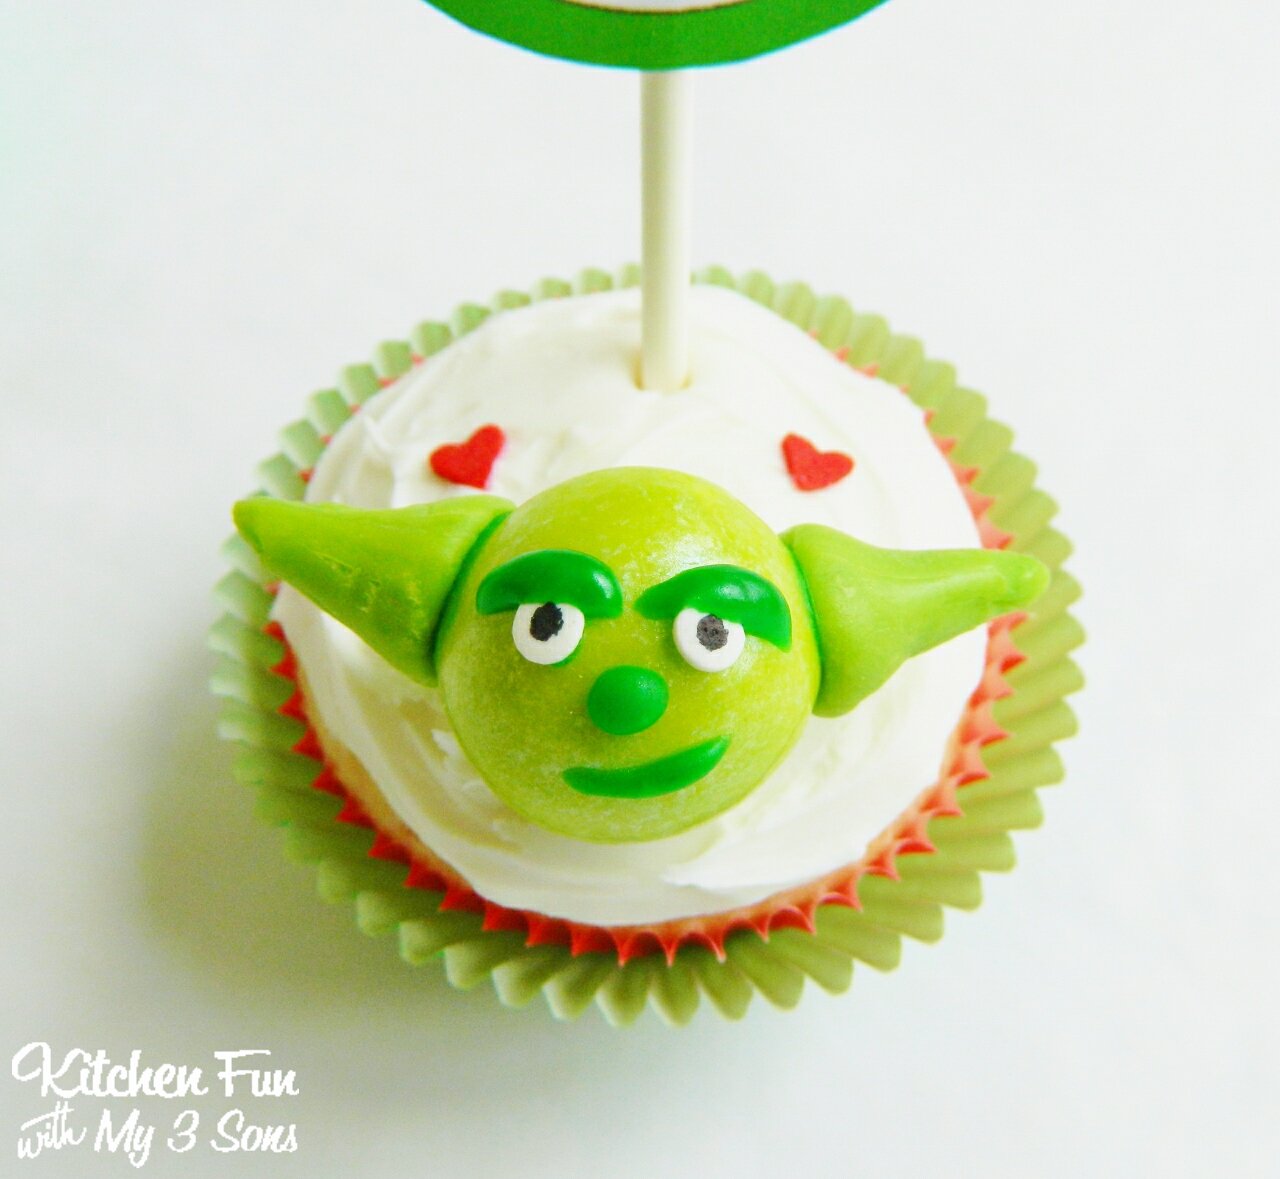 Star Wars Yoda Cupcakes